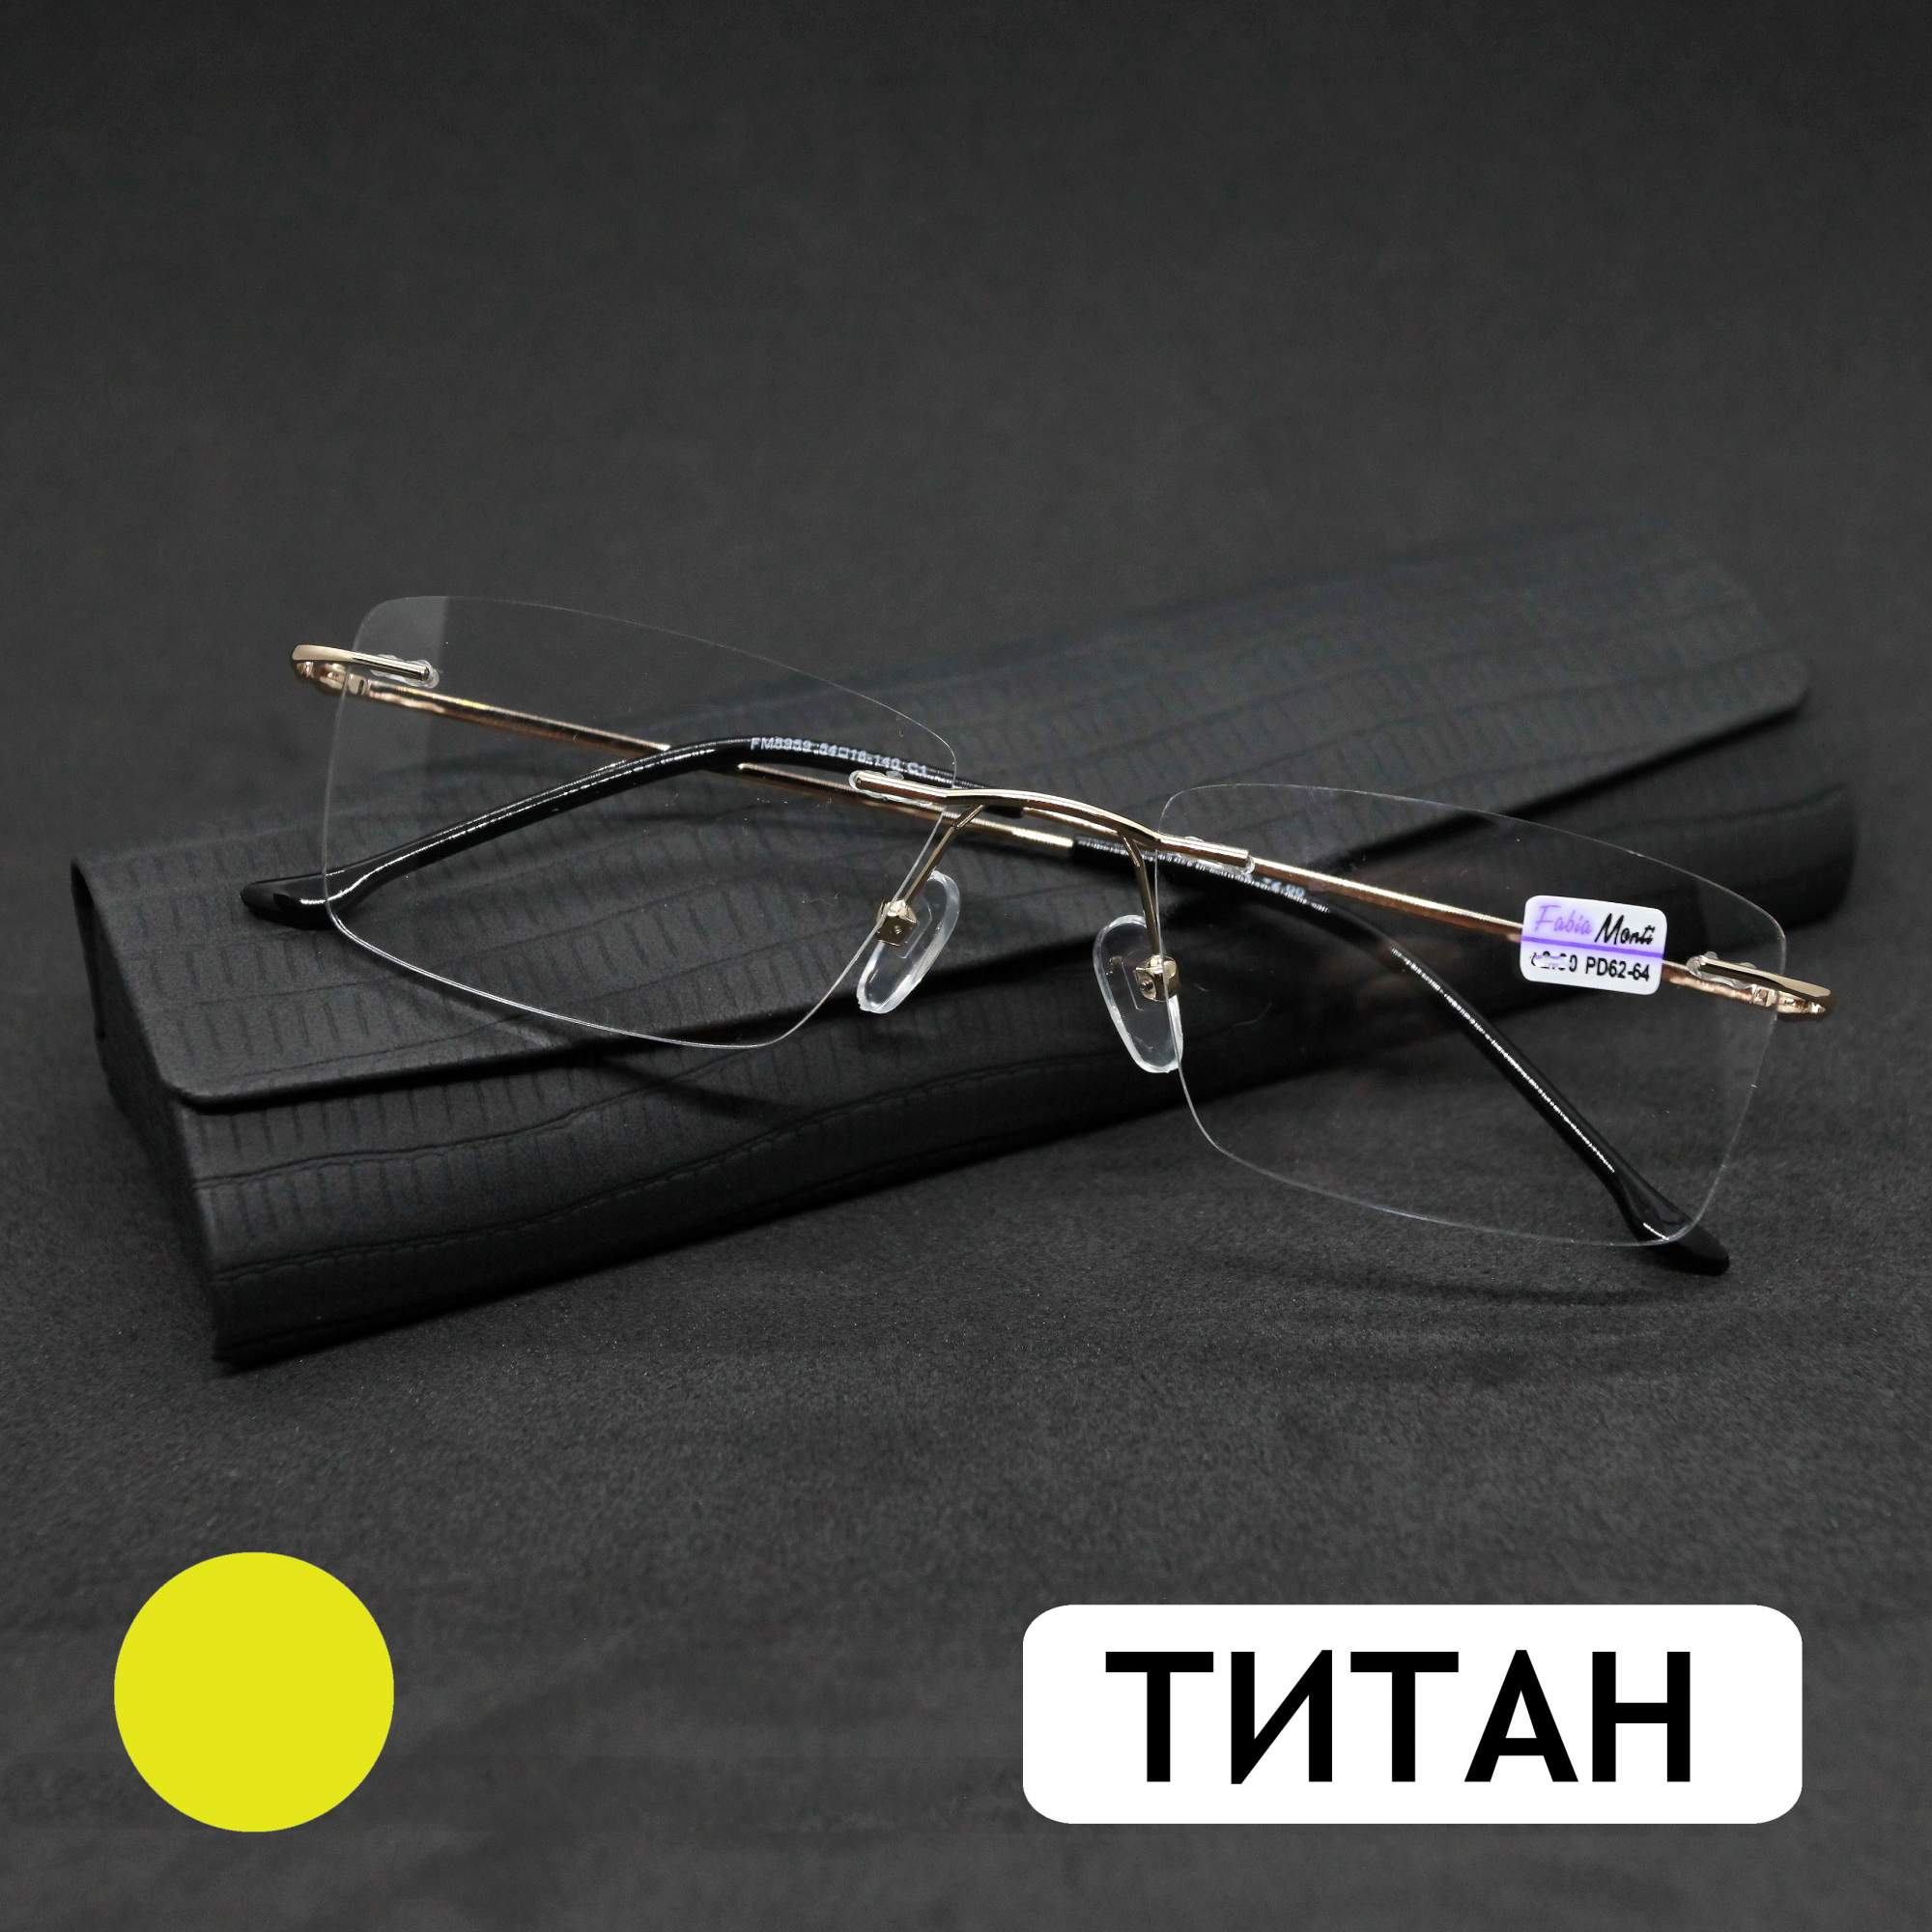 Безободковые очки FM 8959 +2.75, c футляром, оправа титан, золотые, РЦ 62-64